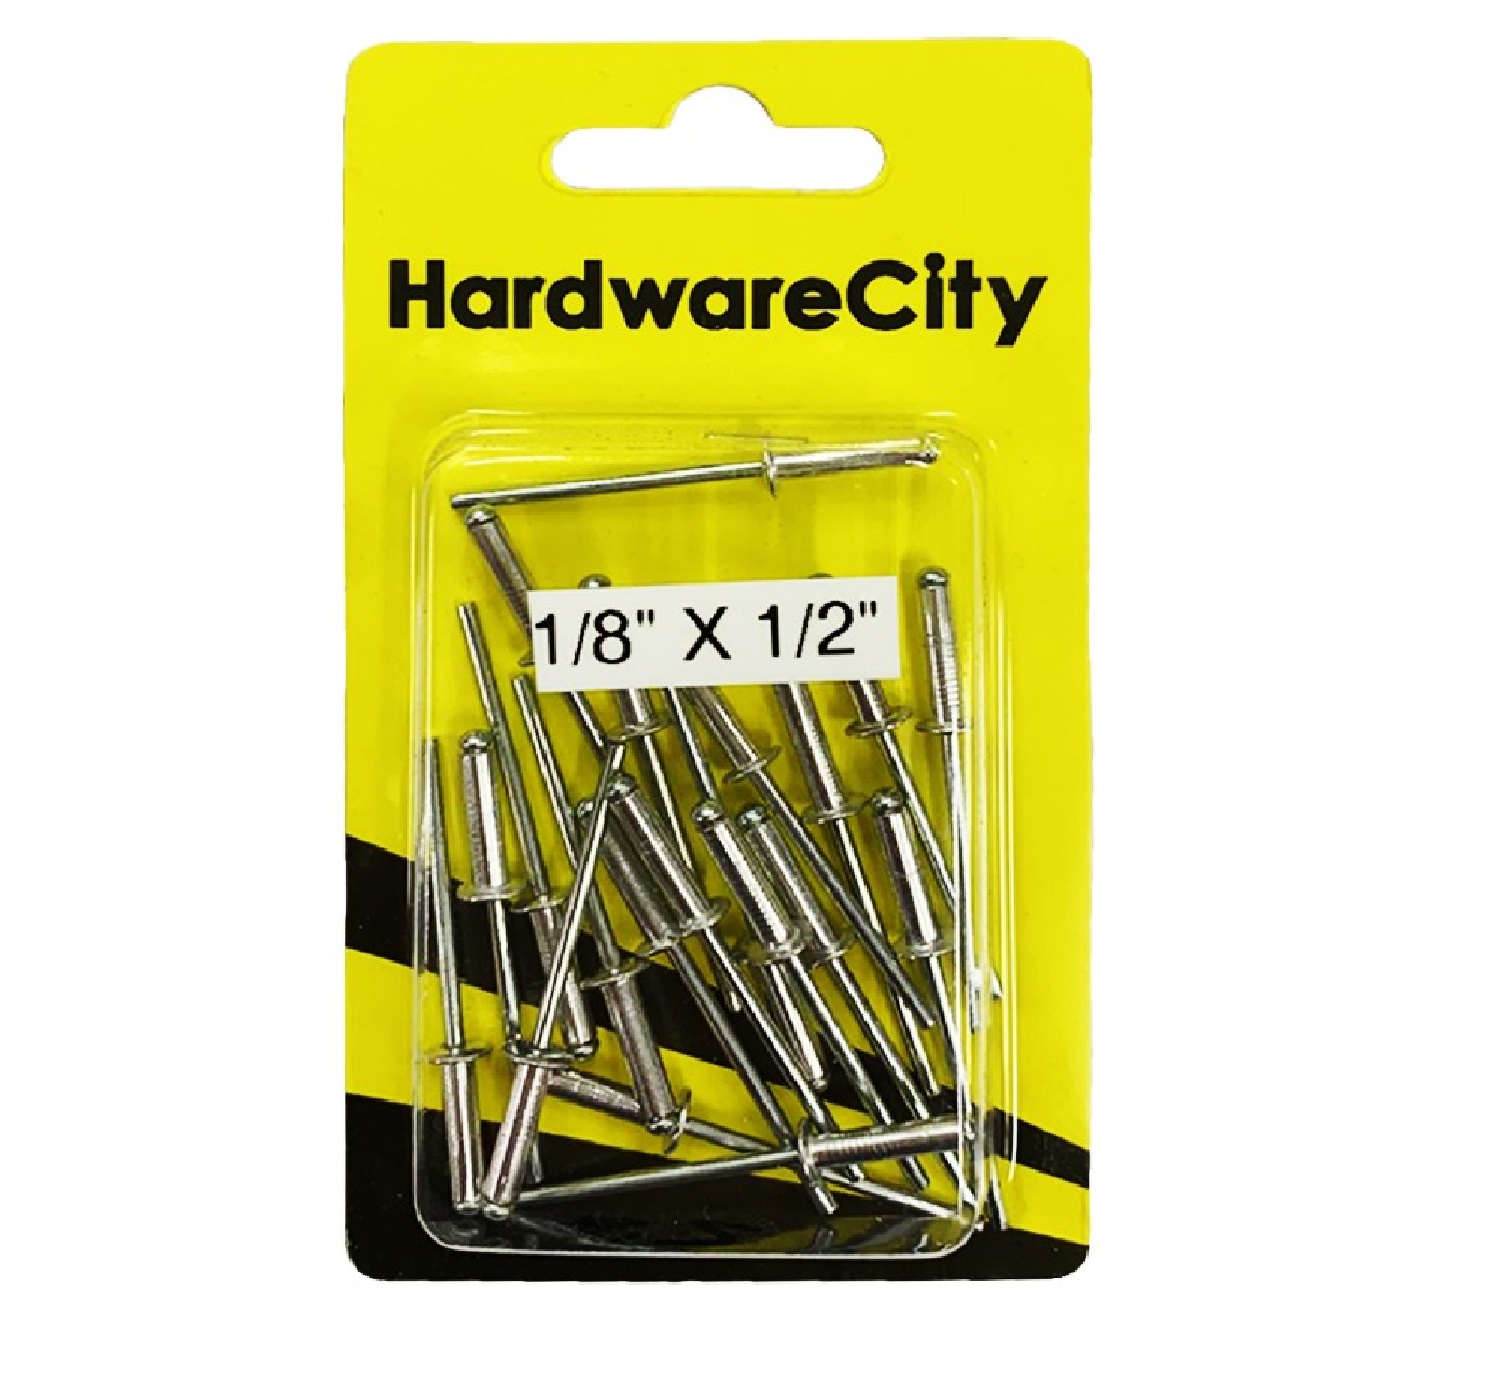 HardwareCity 1/8 X 1/2 Aluminium Rivets, 20PC/Pack